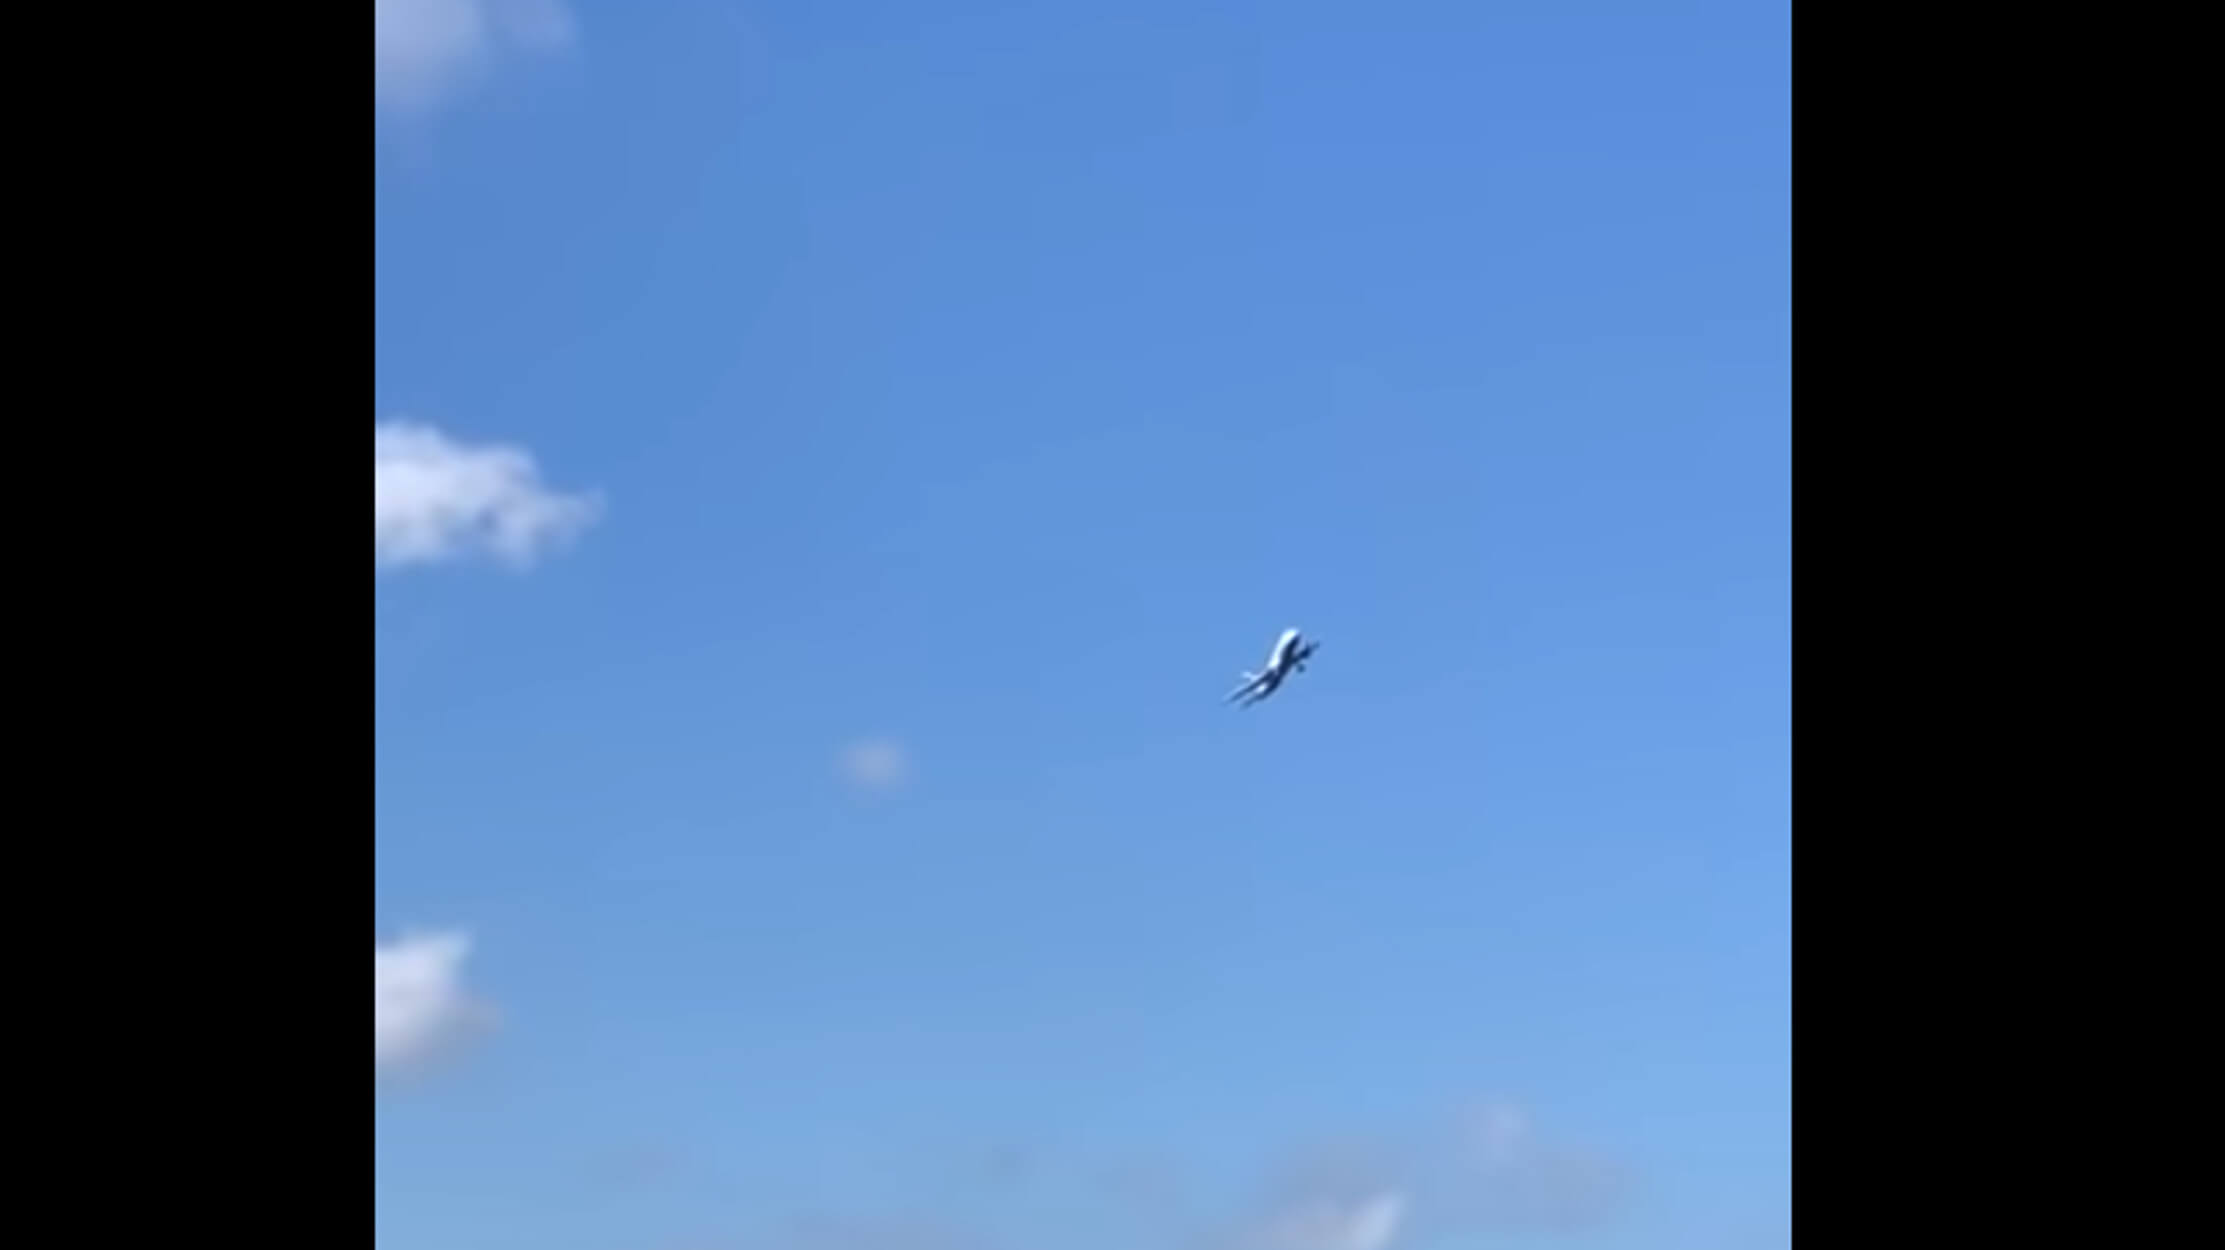 Τρόμος στον αέρα: Αεροπλάνο σε “τρικυμία” έτοιμο να πέσει! – video